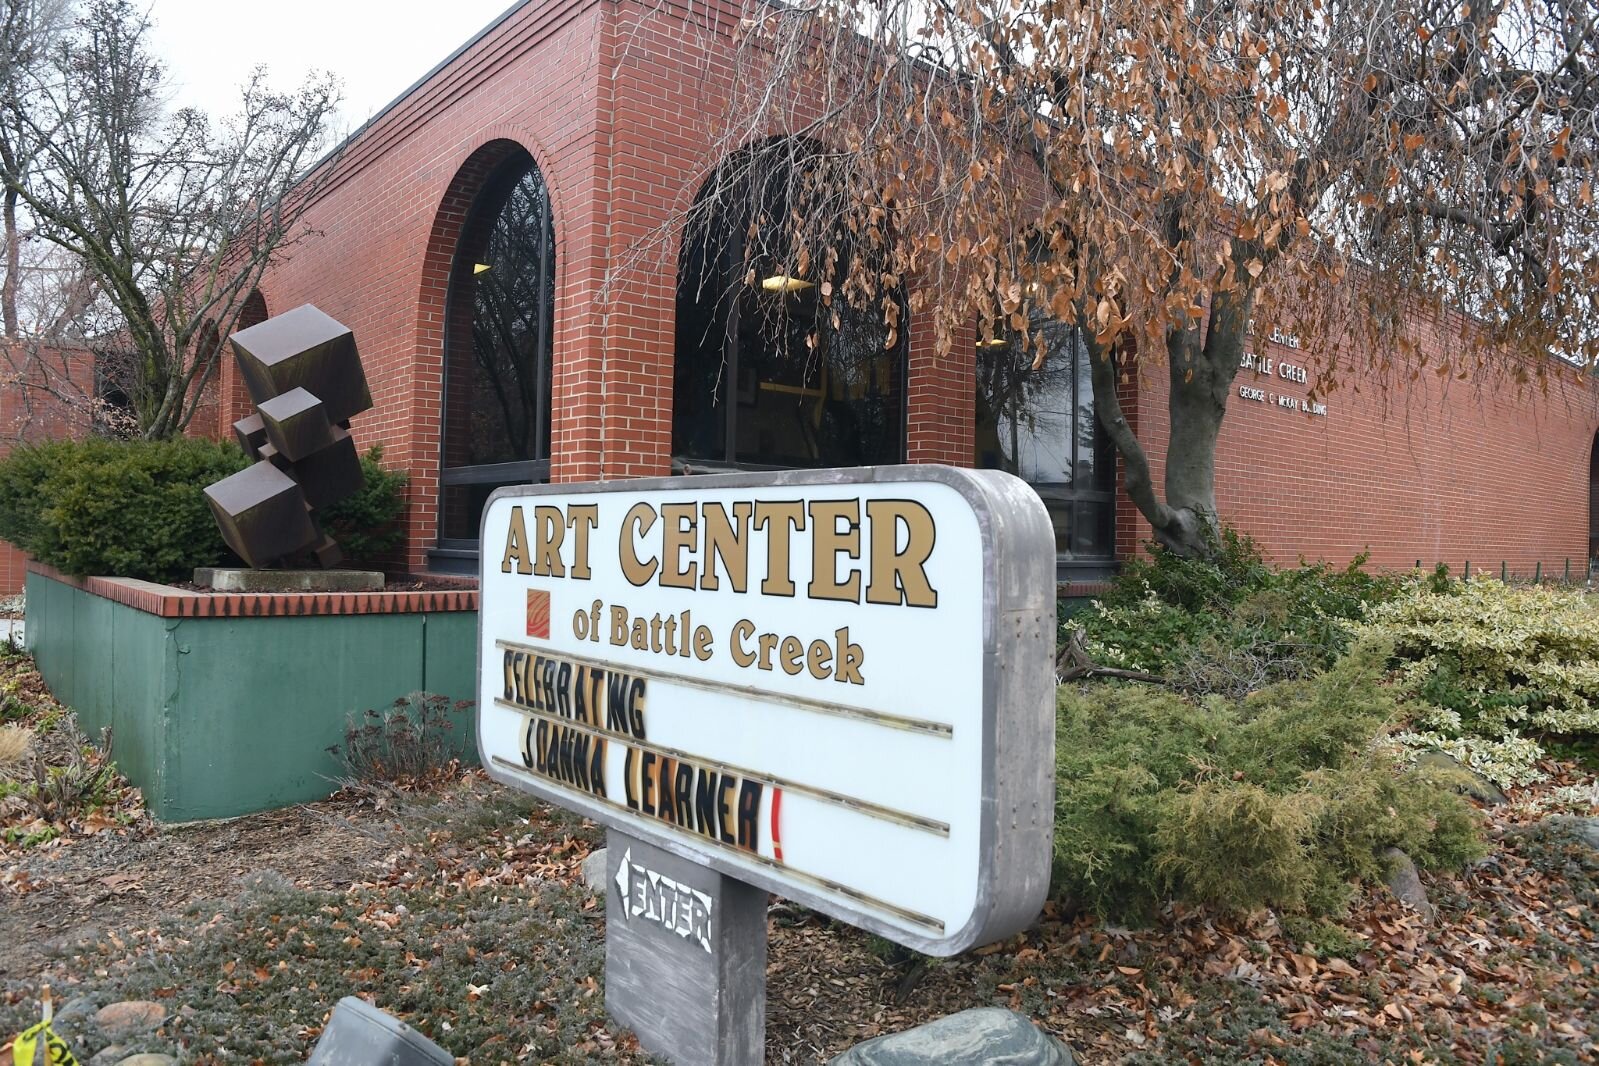 The Art Center of Battle Creek is located on Emmett Street on Battle Creek’s northside.